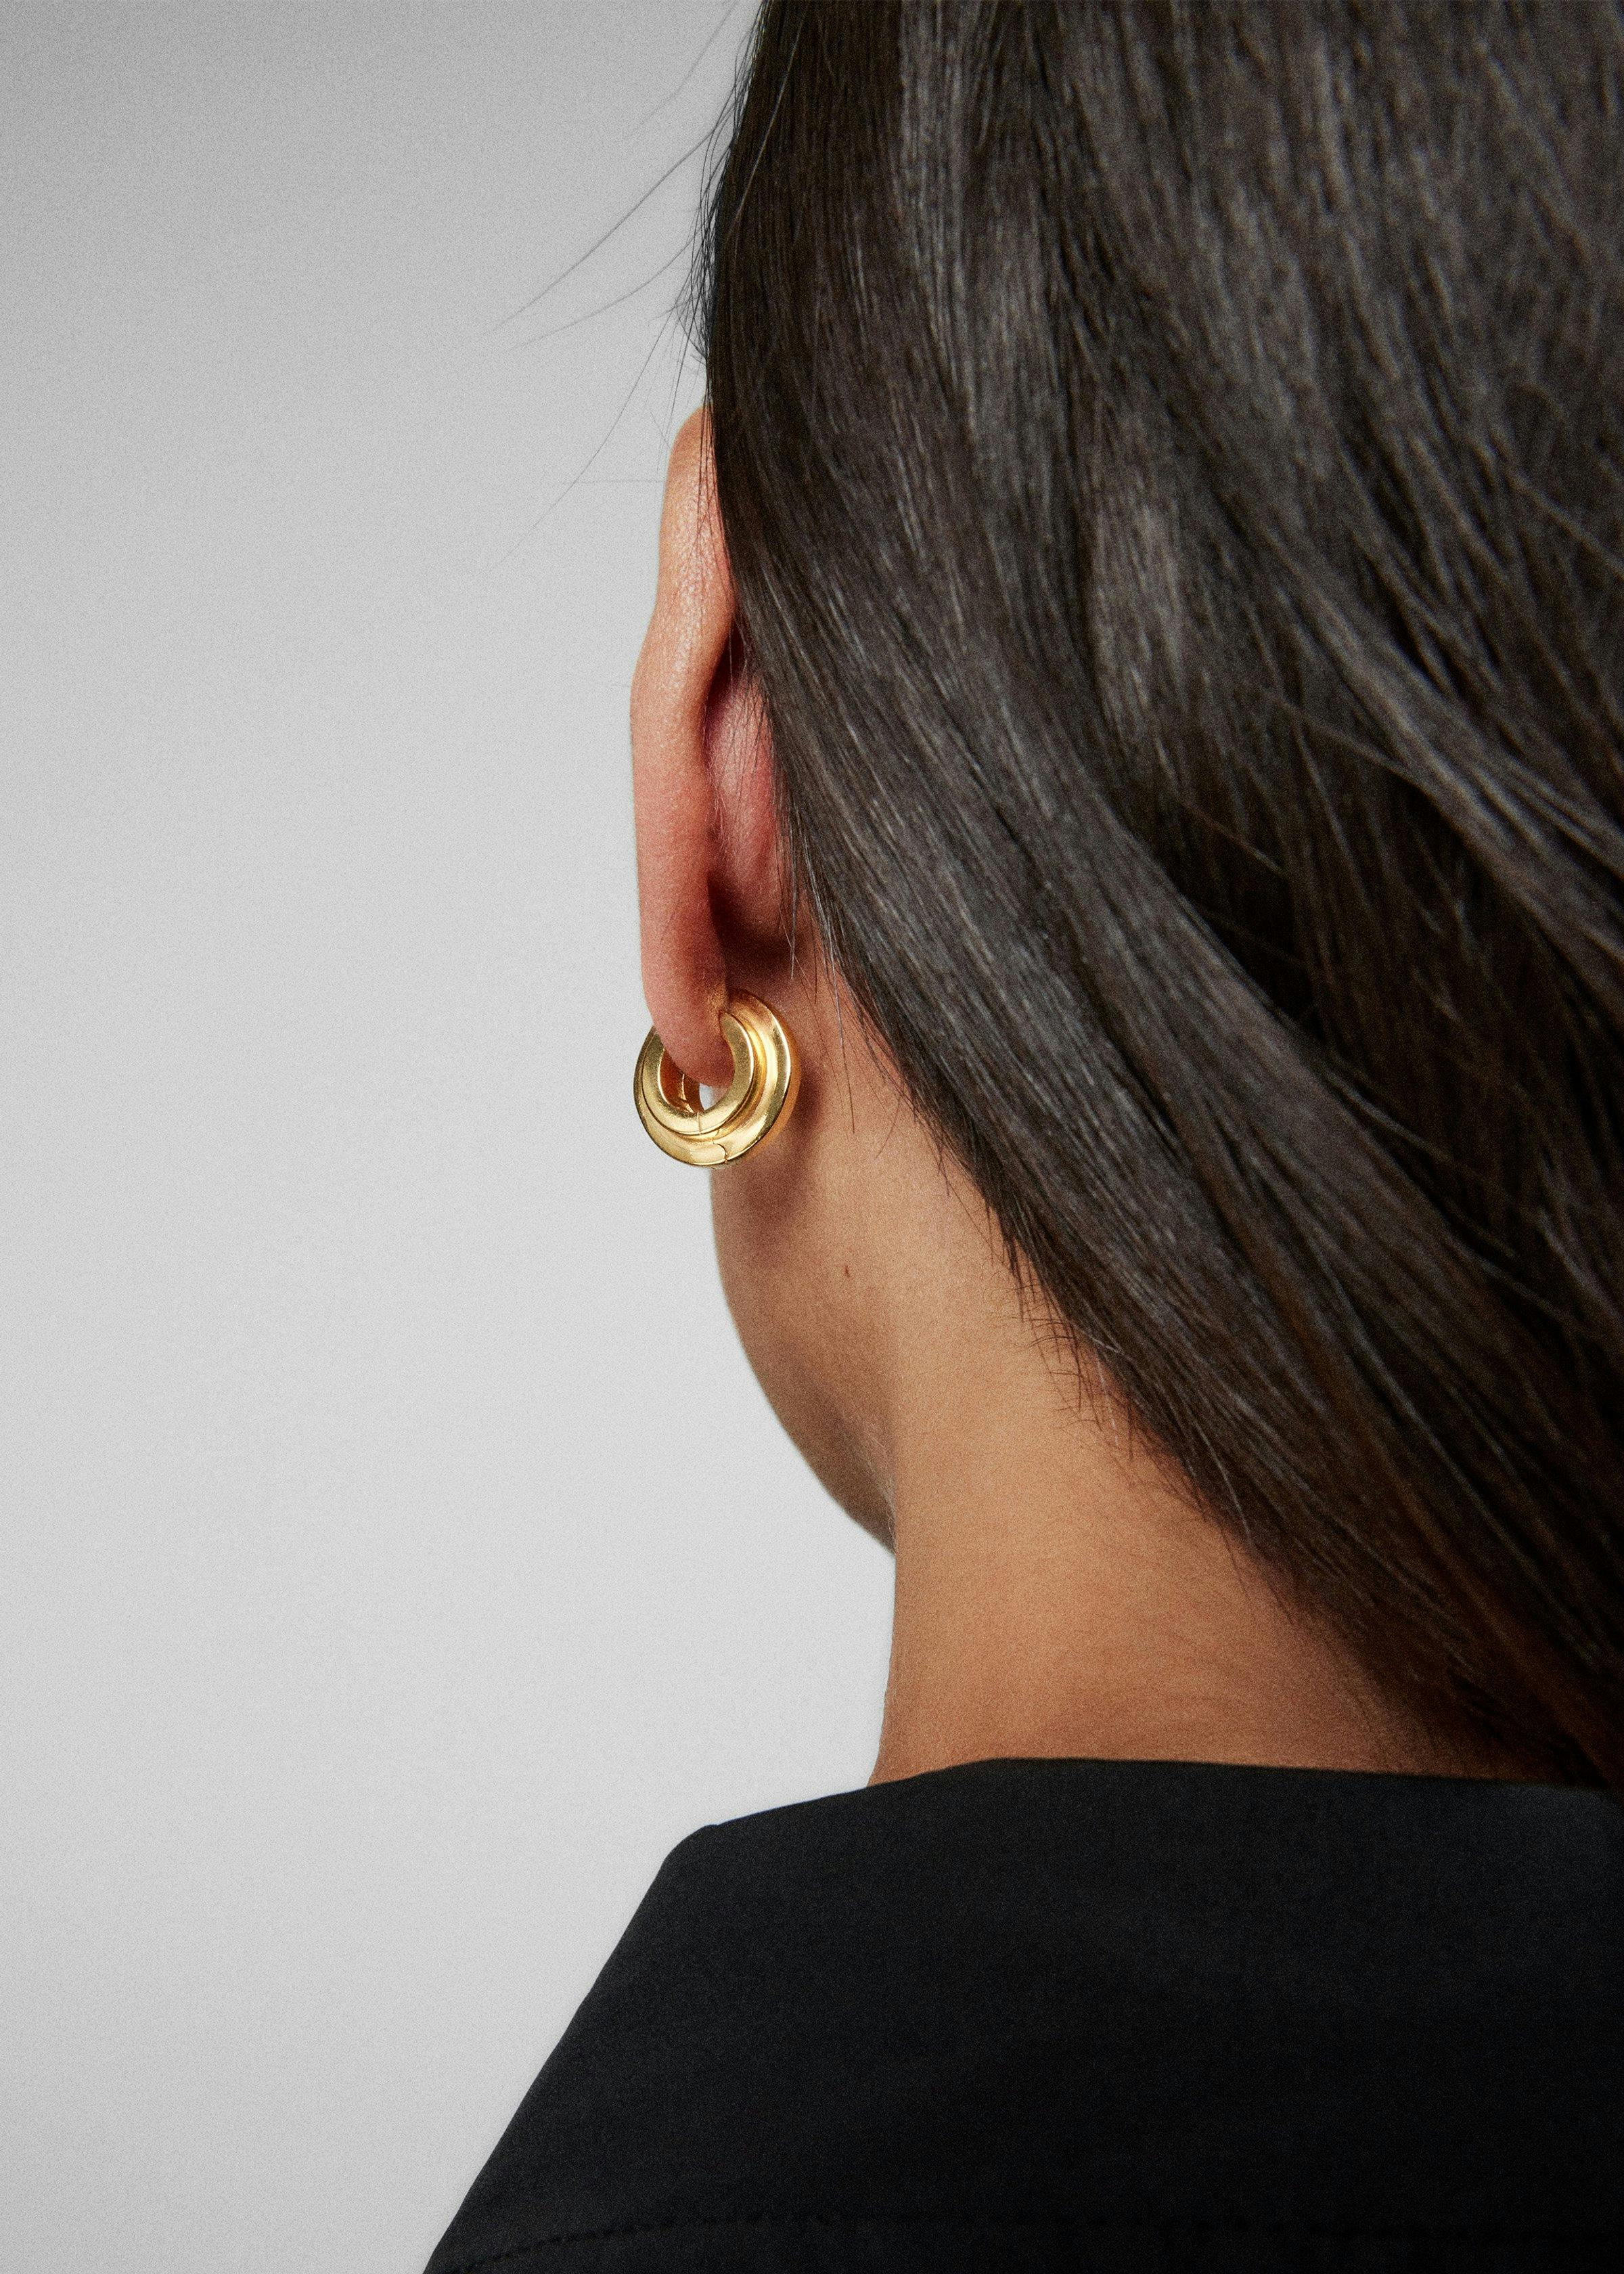 Level earrings